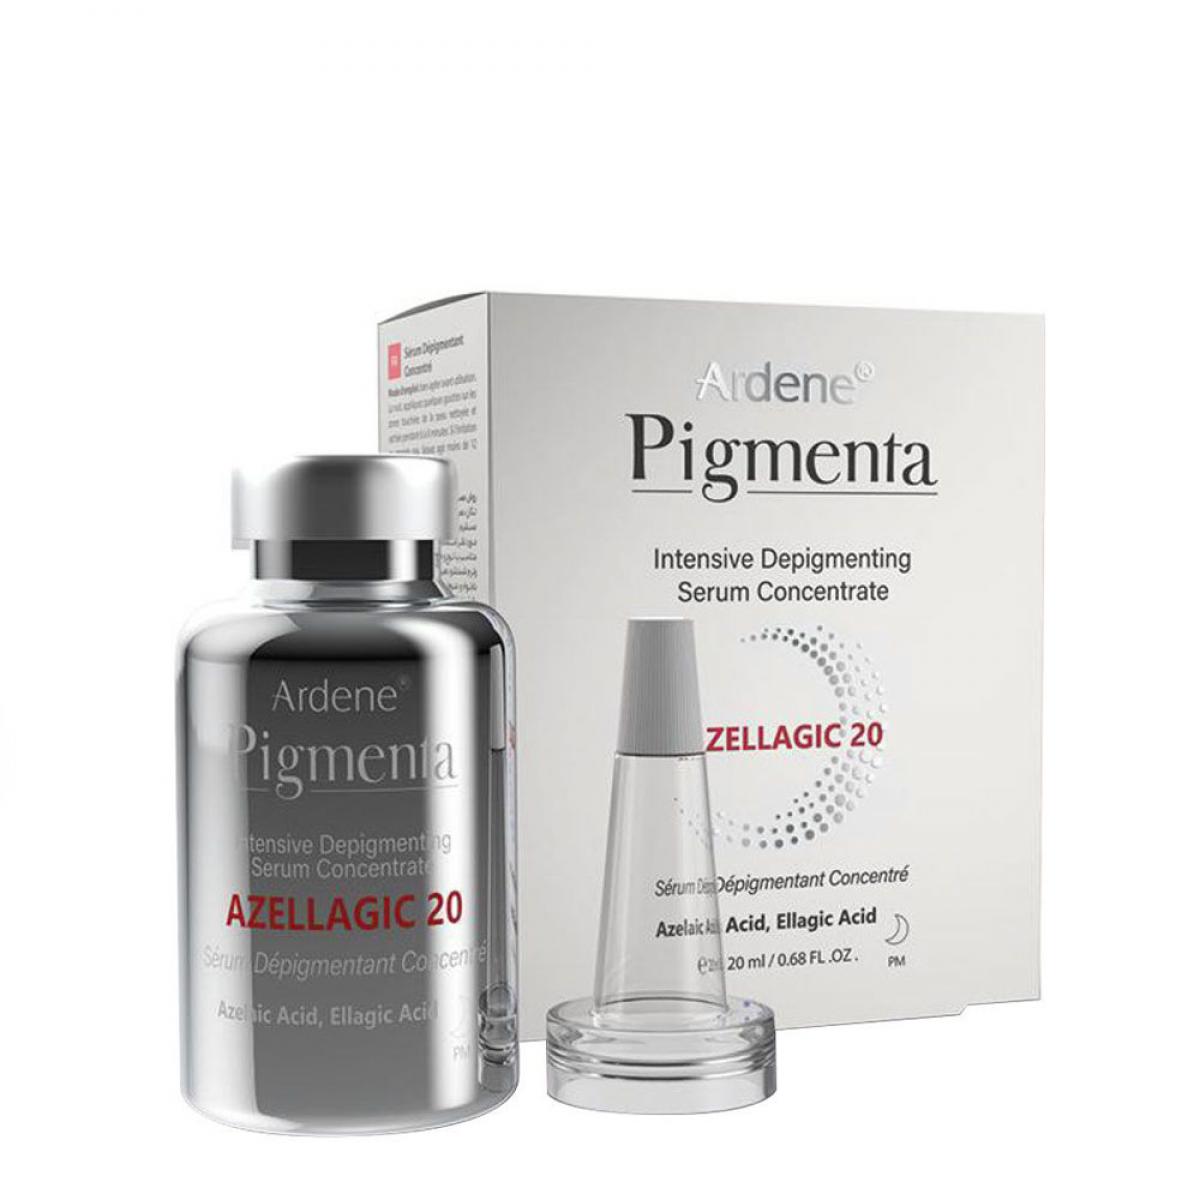 سرم کنسانتره روشن کننده و ضد لک قوی - Ardene Pigmenta AZELLAGIC20 Intensive Depigmenting Serum Concentrate 20 ml